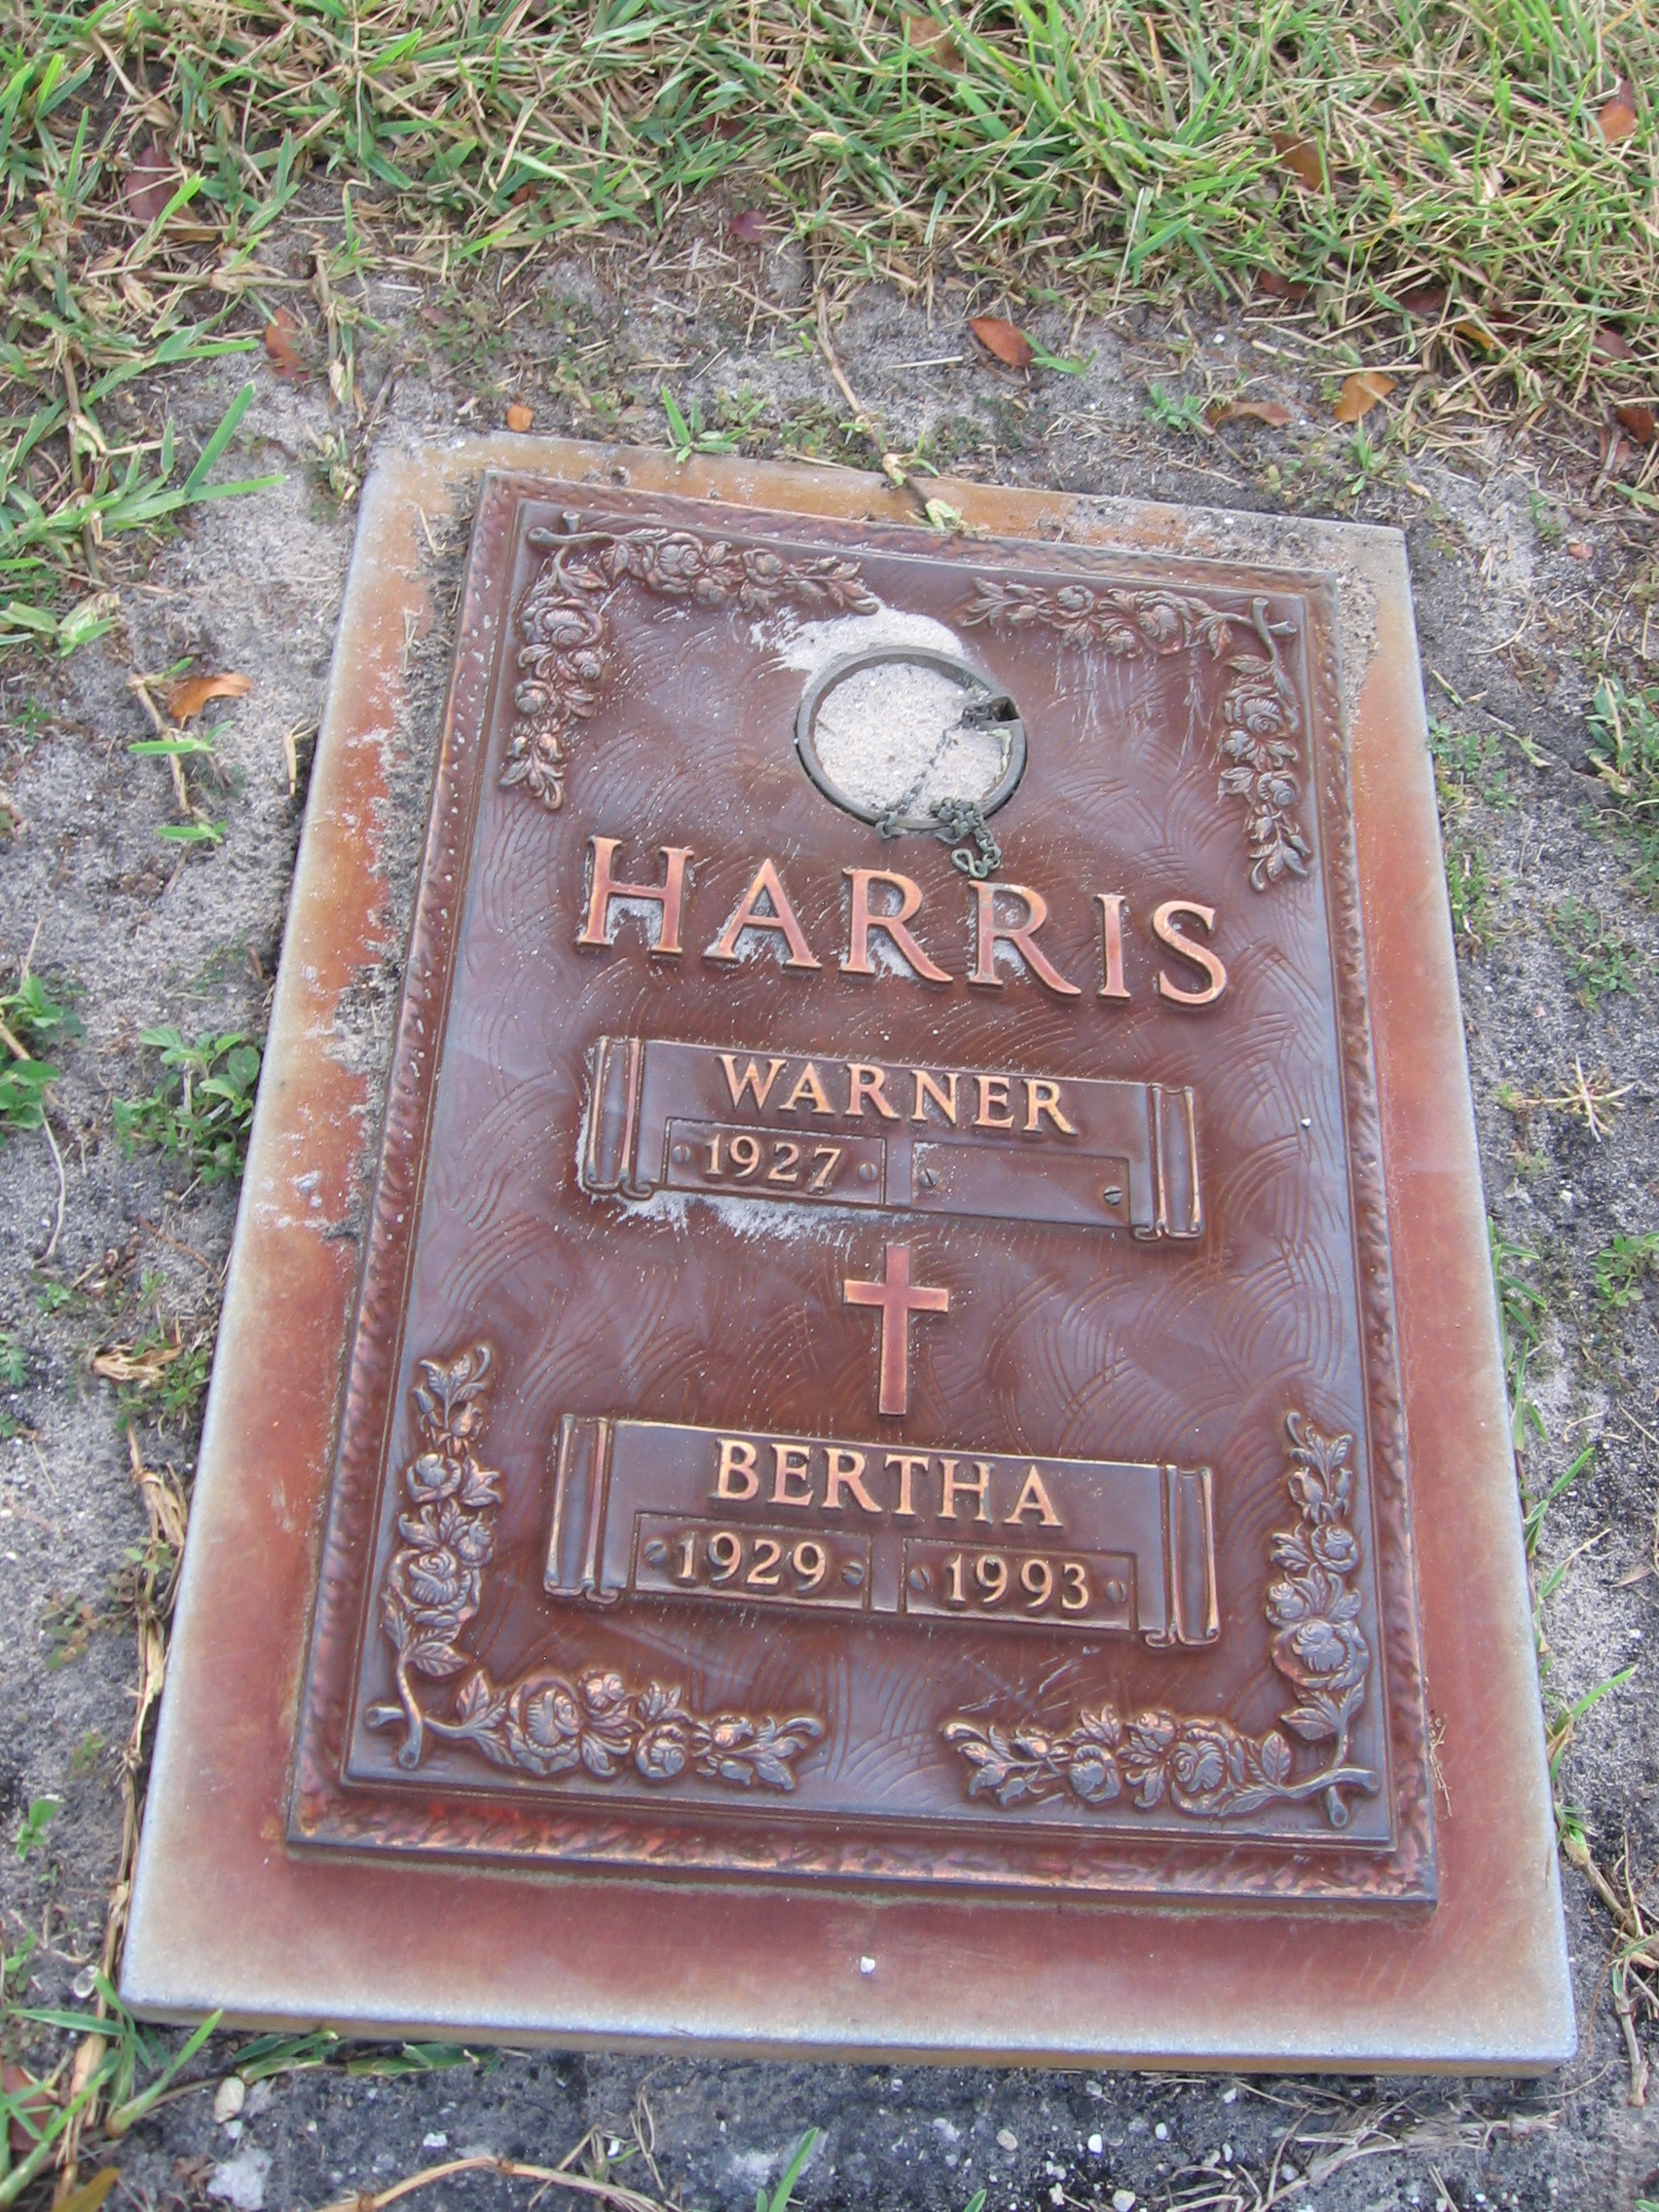 Warner Harris